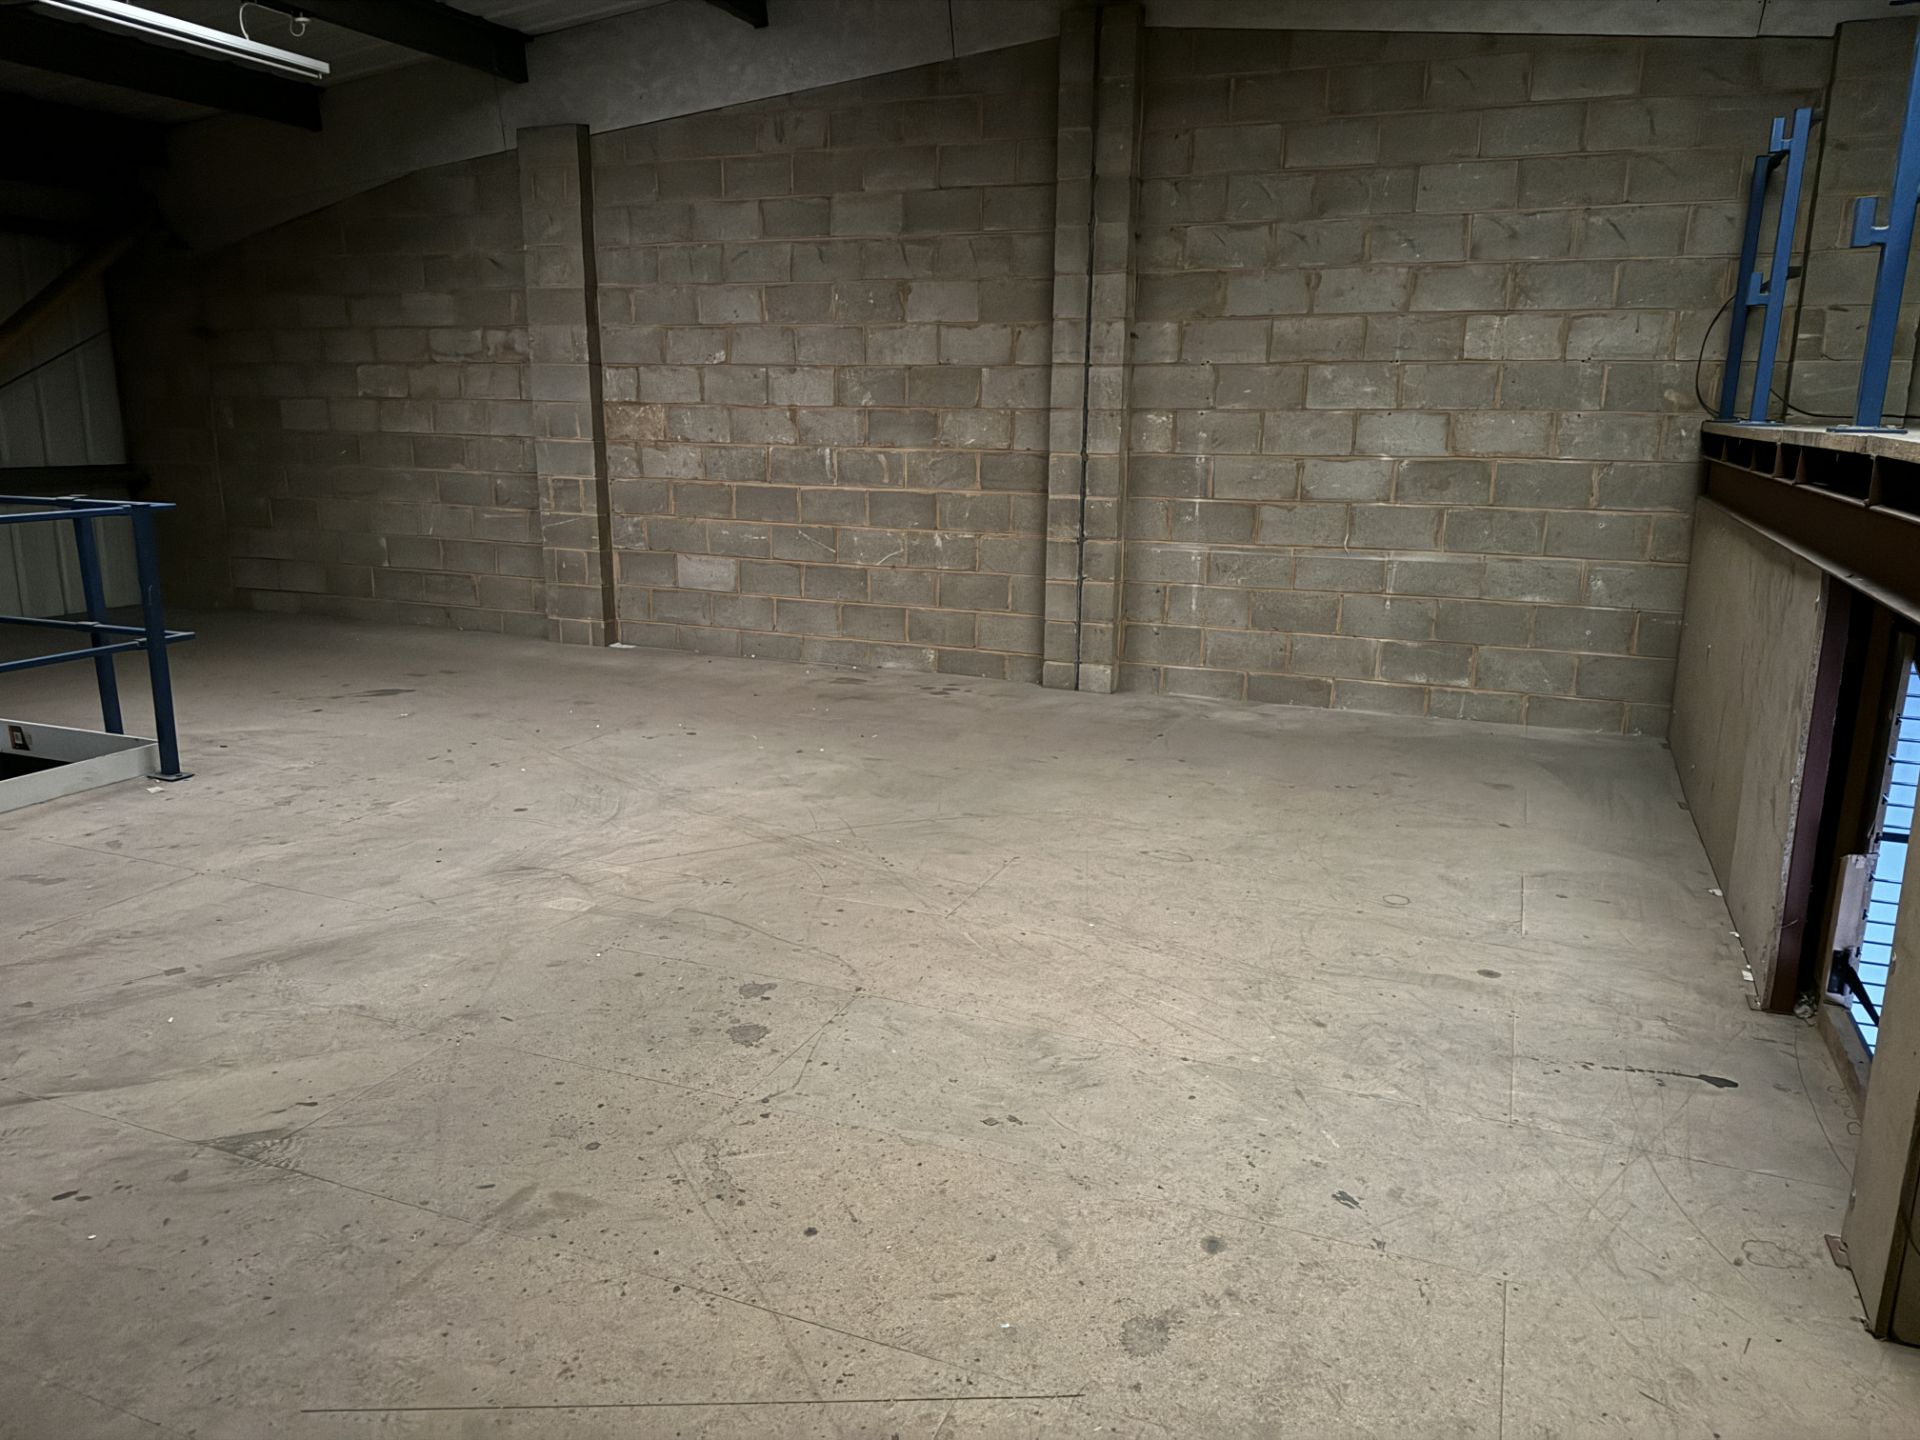 Mezzanine Floor, total floor area 14,400mm x 7700m - Image 7 of 10